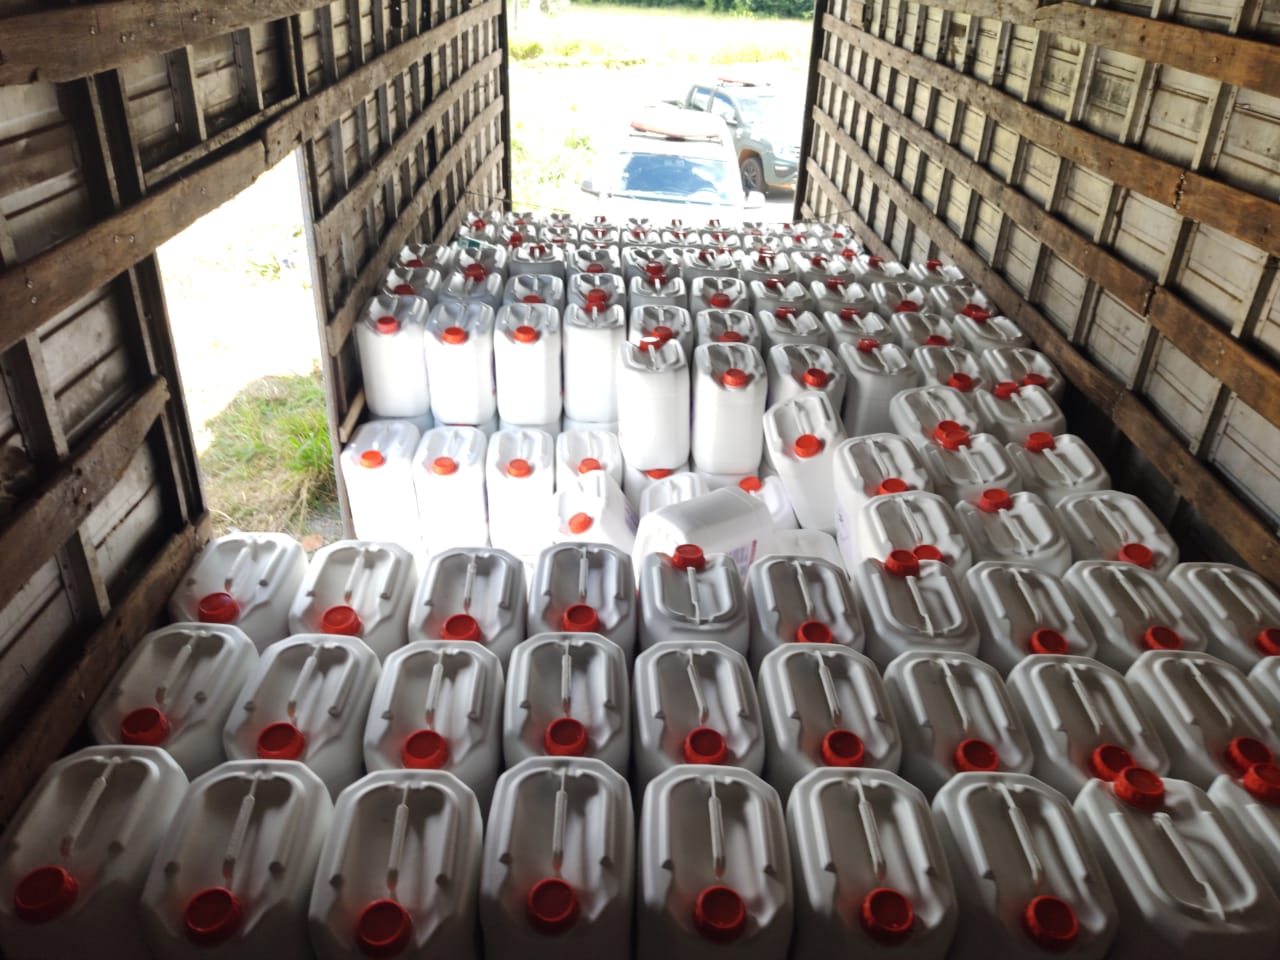 A Polícia Militar (PM) apreendeu, nesta sexta-feira (4), cerca de 10 toneladas de agrotóxico falsificado em Goiânia.(Foto: divulgação/PM)